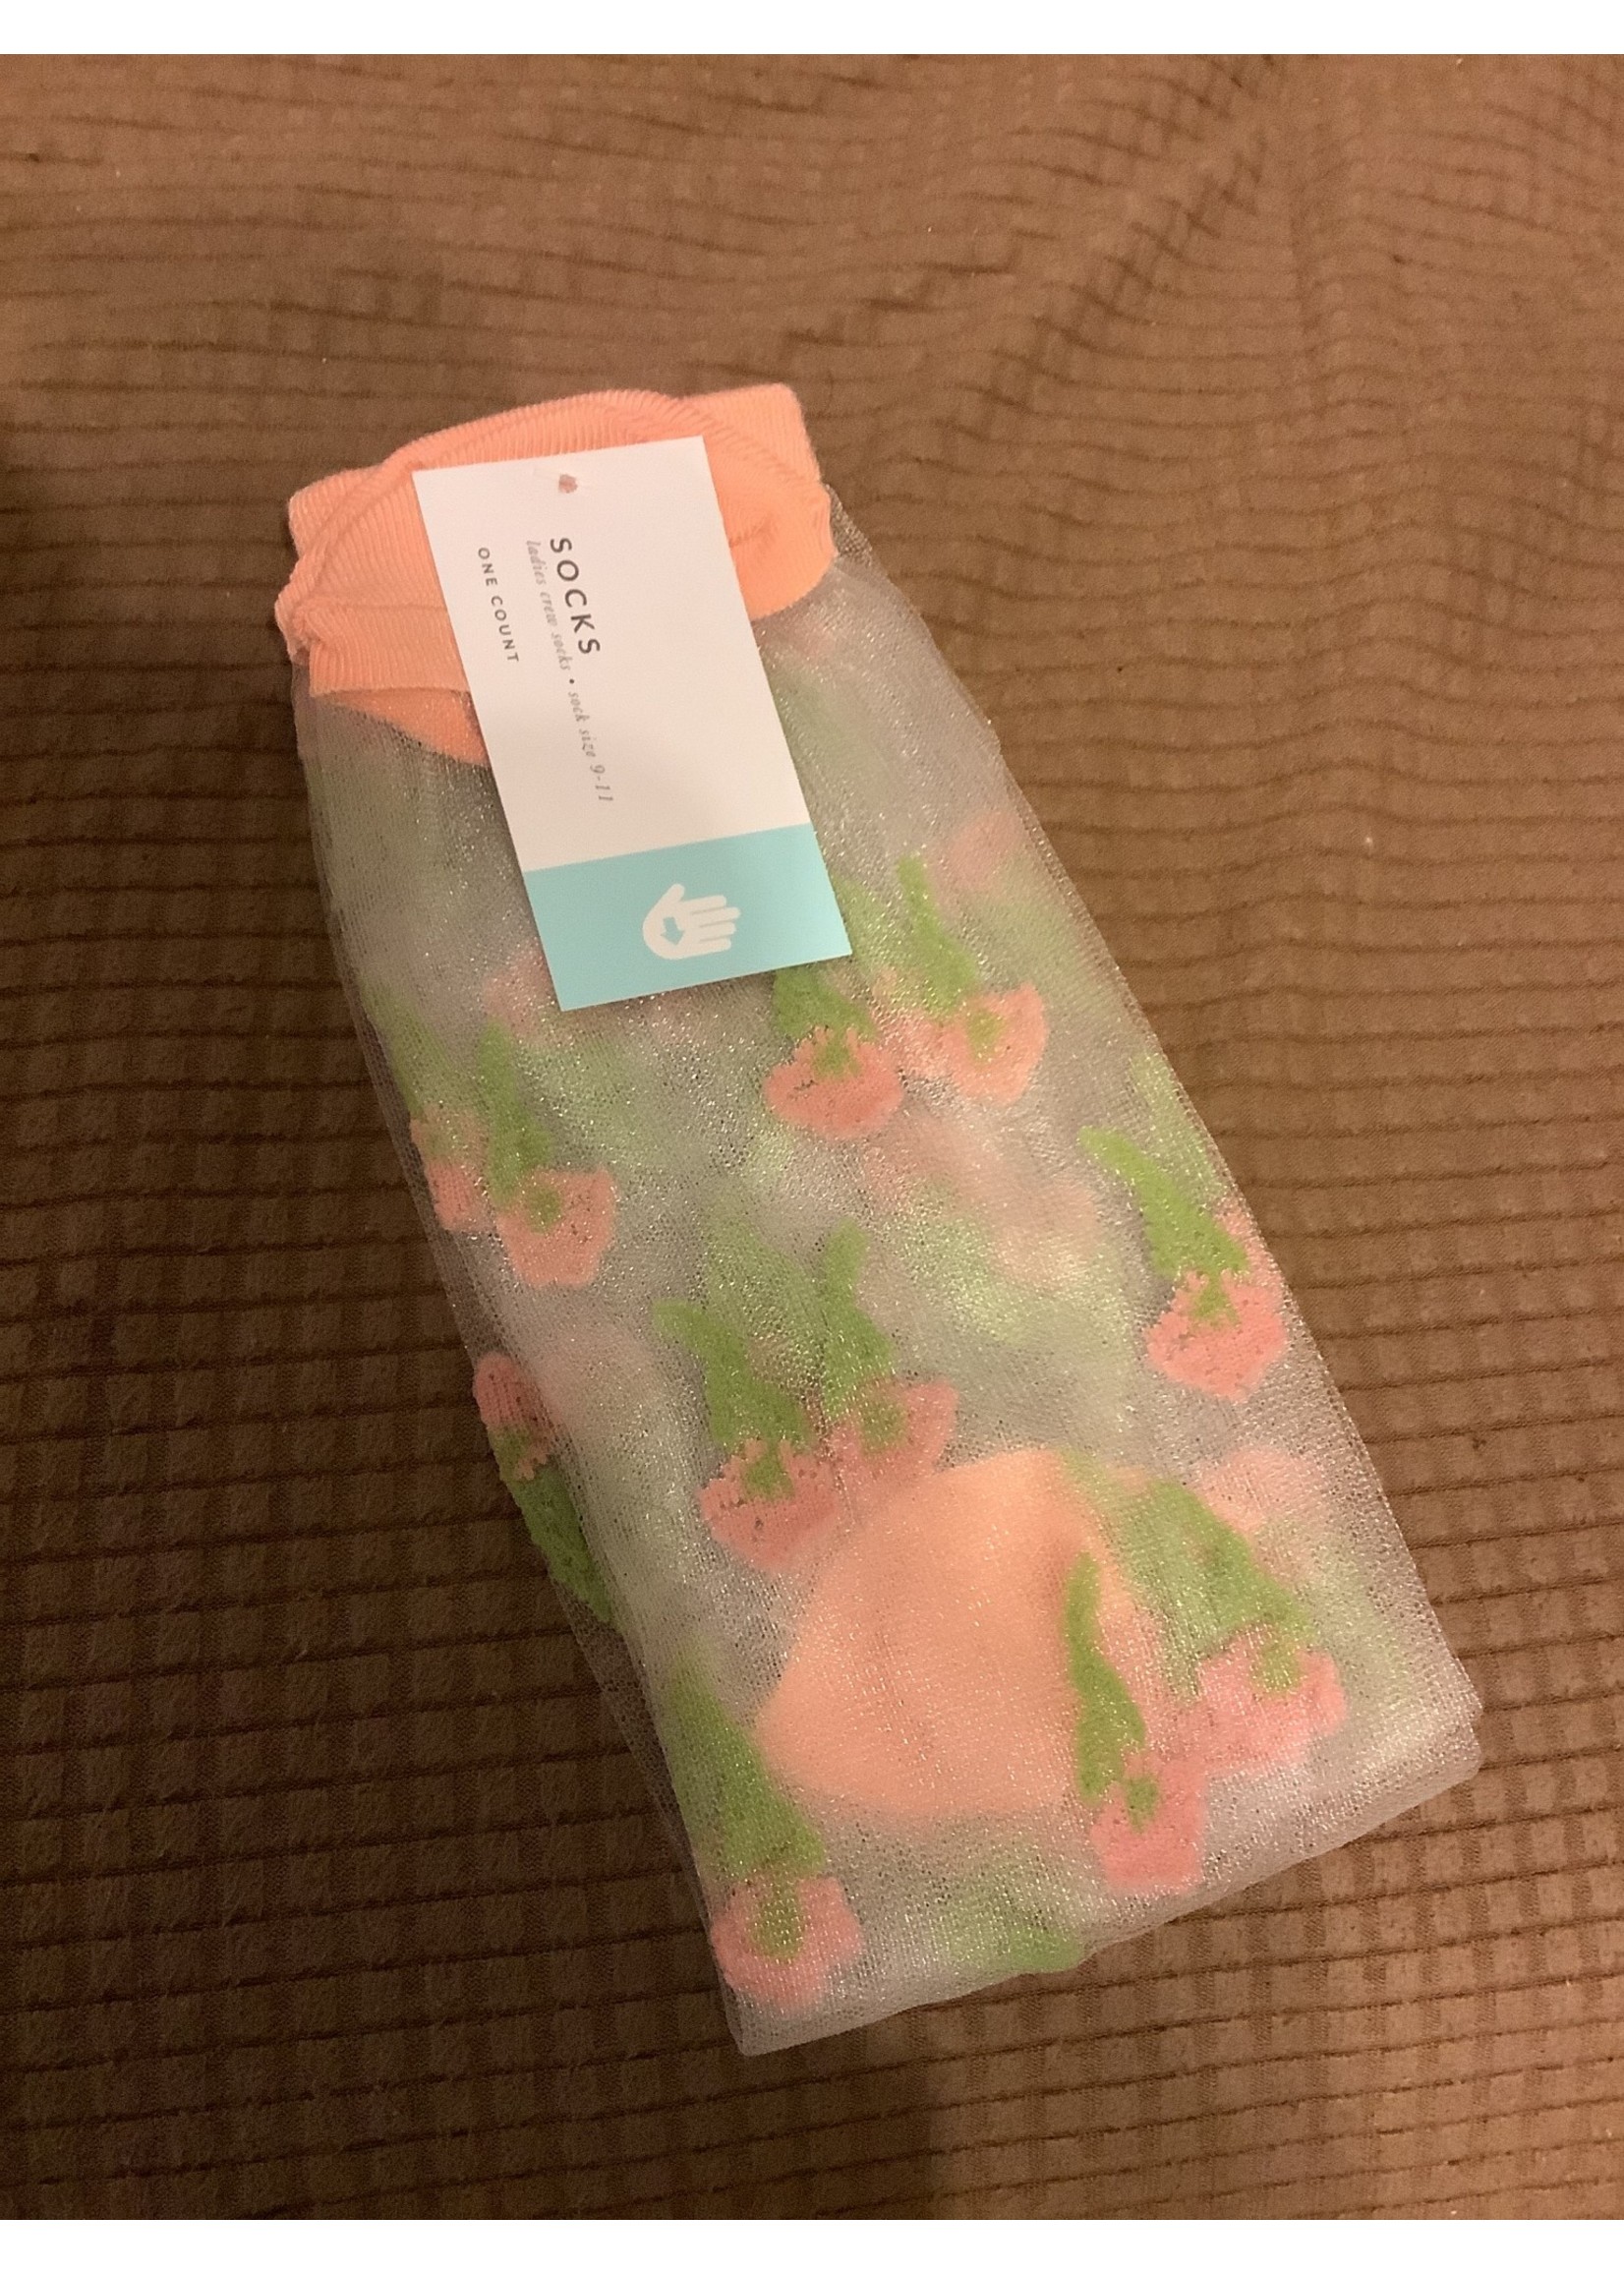 Ladies crew socks - Sheer peach w/ flowers 9-11 gertex